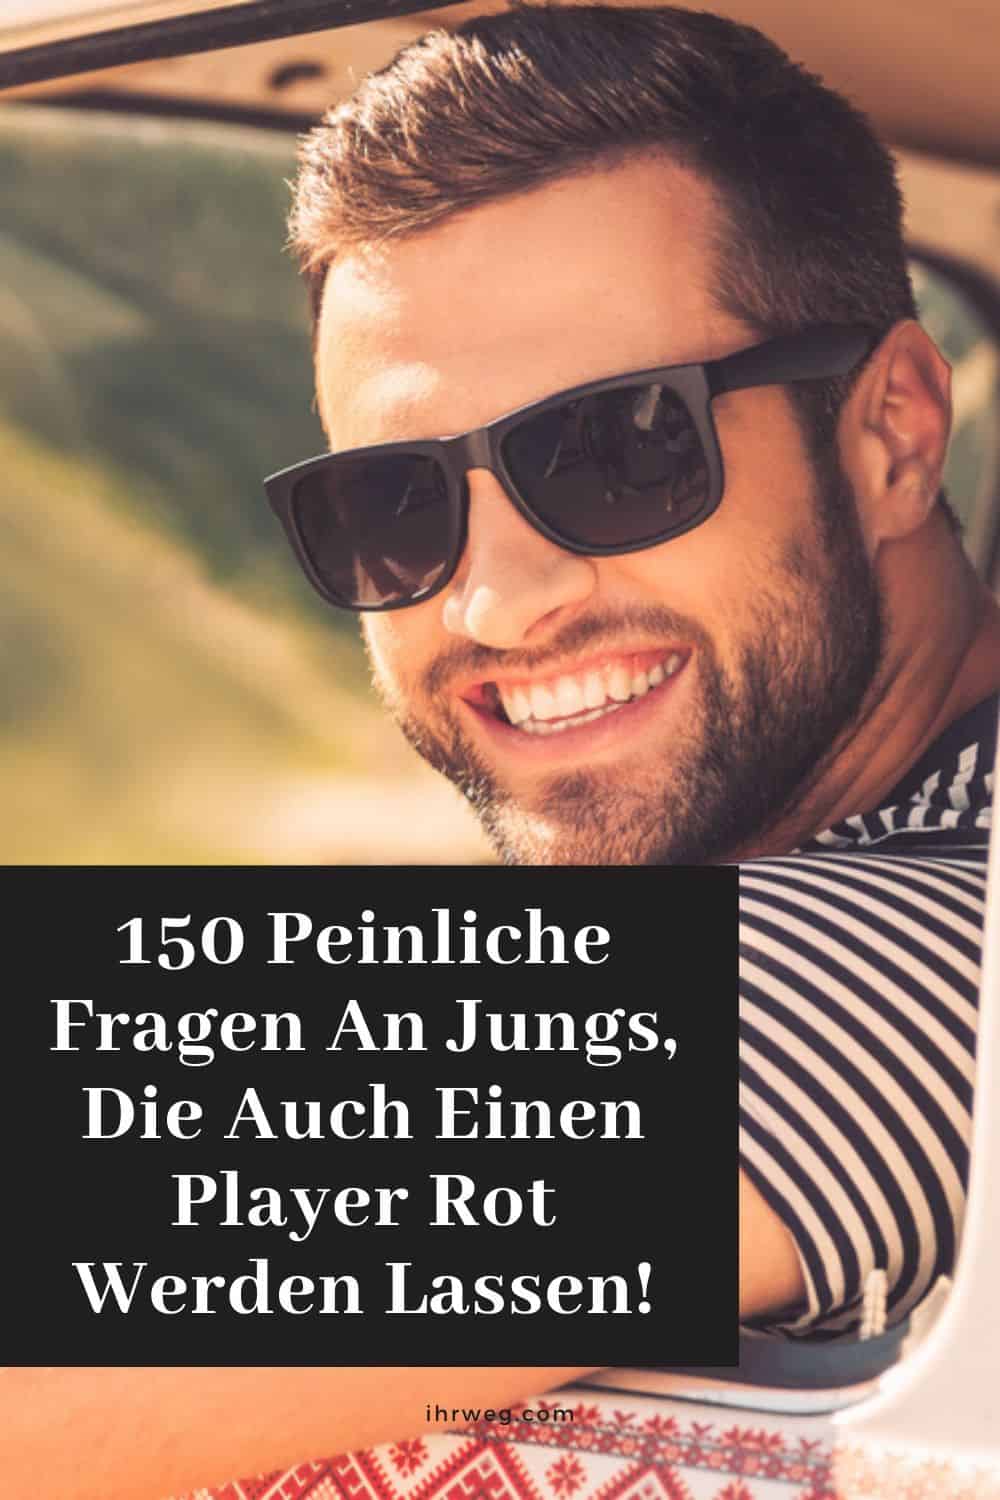 150 Peinliche Fragen An Jungs, Die Auch Einen Player Rot Werden Lassen!